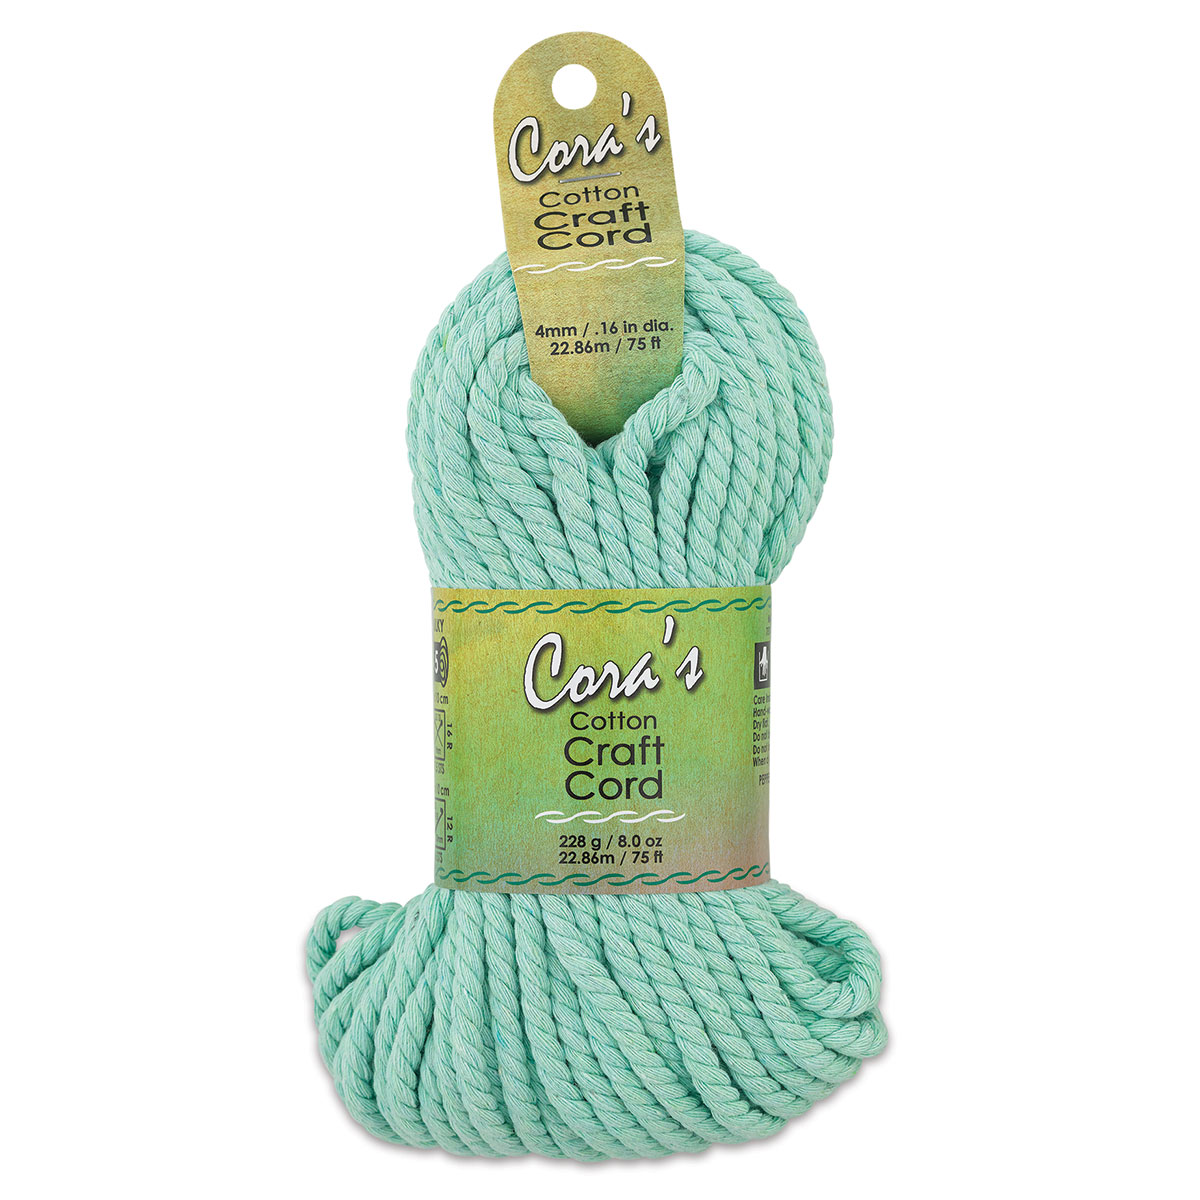 Pepperell Cotton Macramé Cord - Mint Green, 2 mm, 100 ft